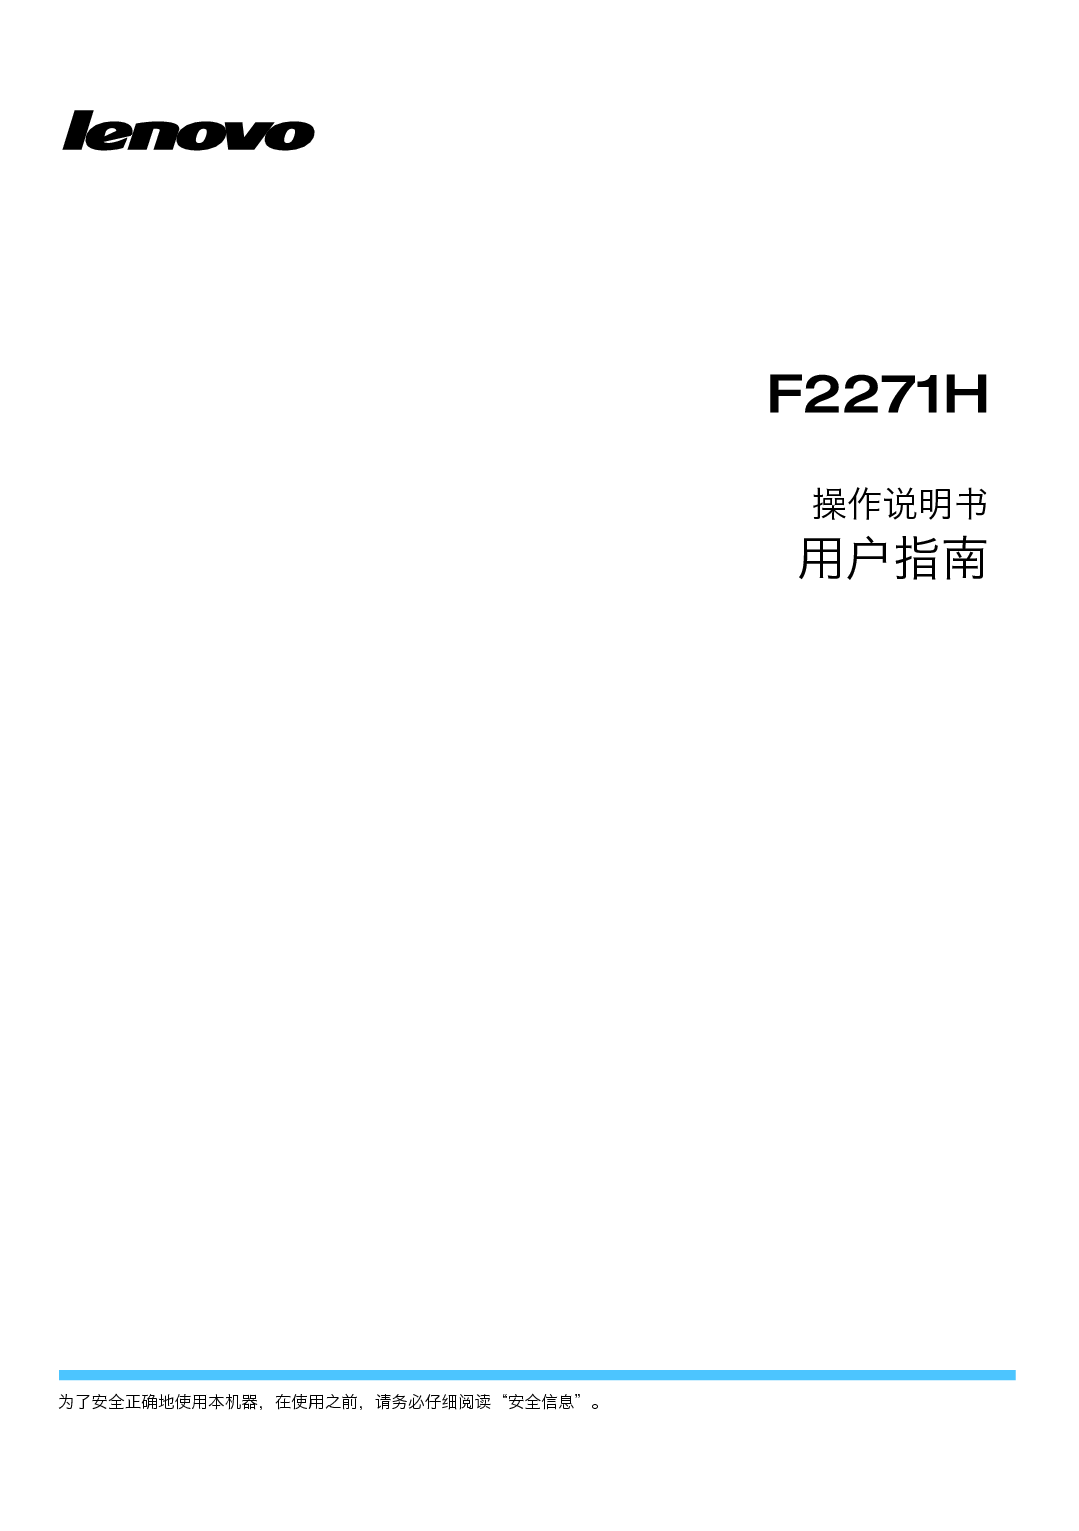 联想 Lenovo F2271H 用户手册 封面